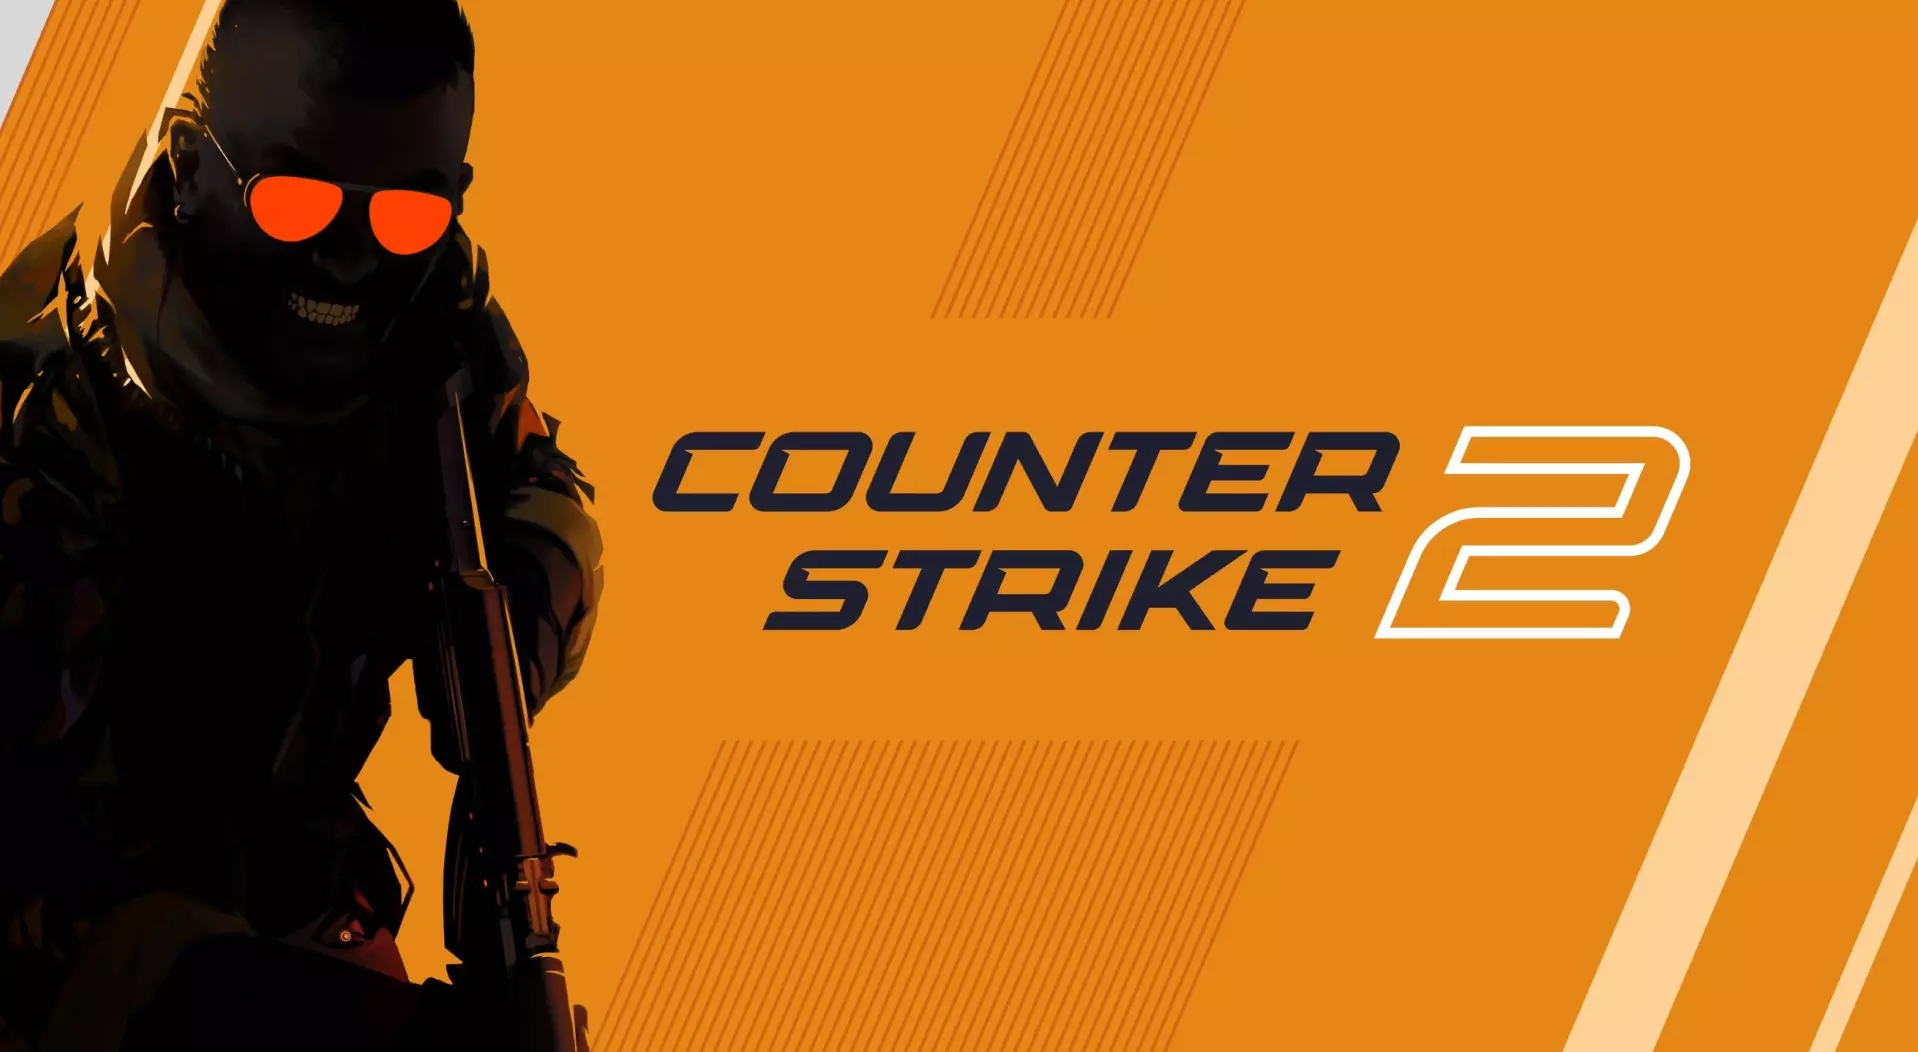 Valve udgiver stor opdatering til Counter-Strike 2 og tilføjer venstrehåndsstyring og meget mere